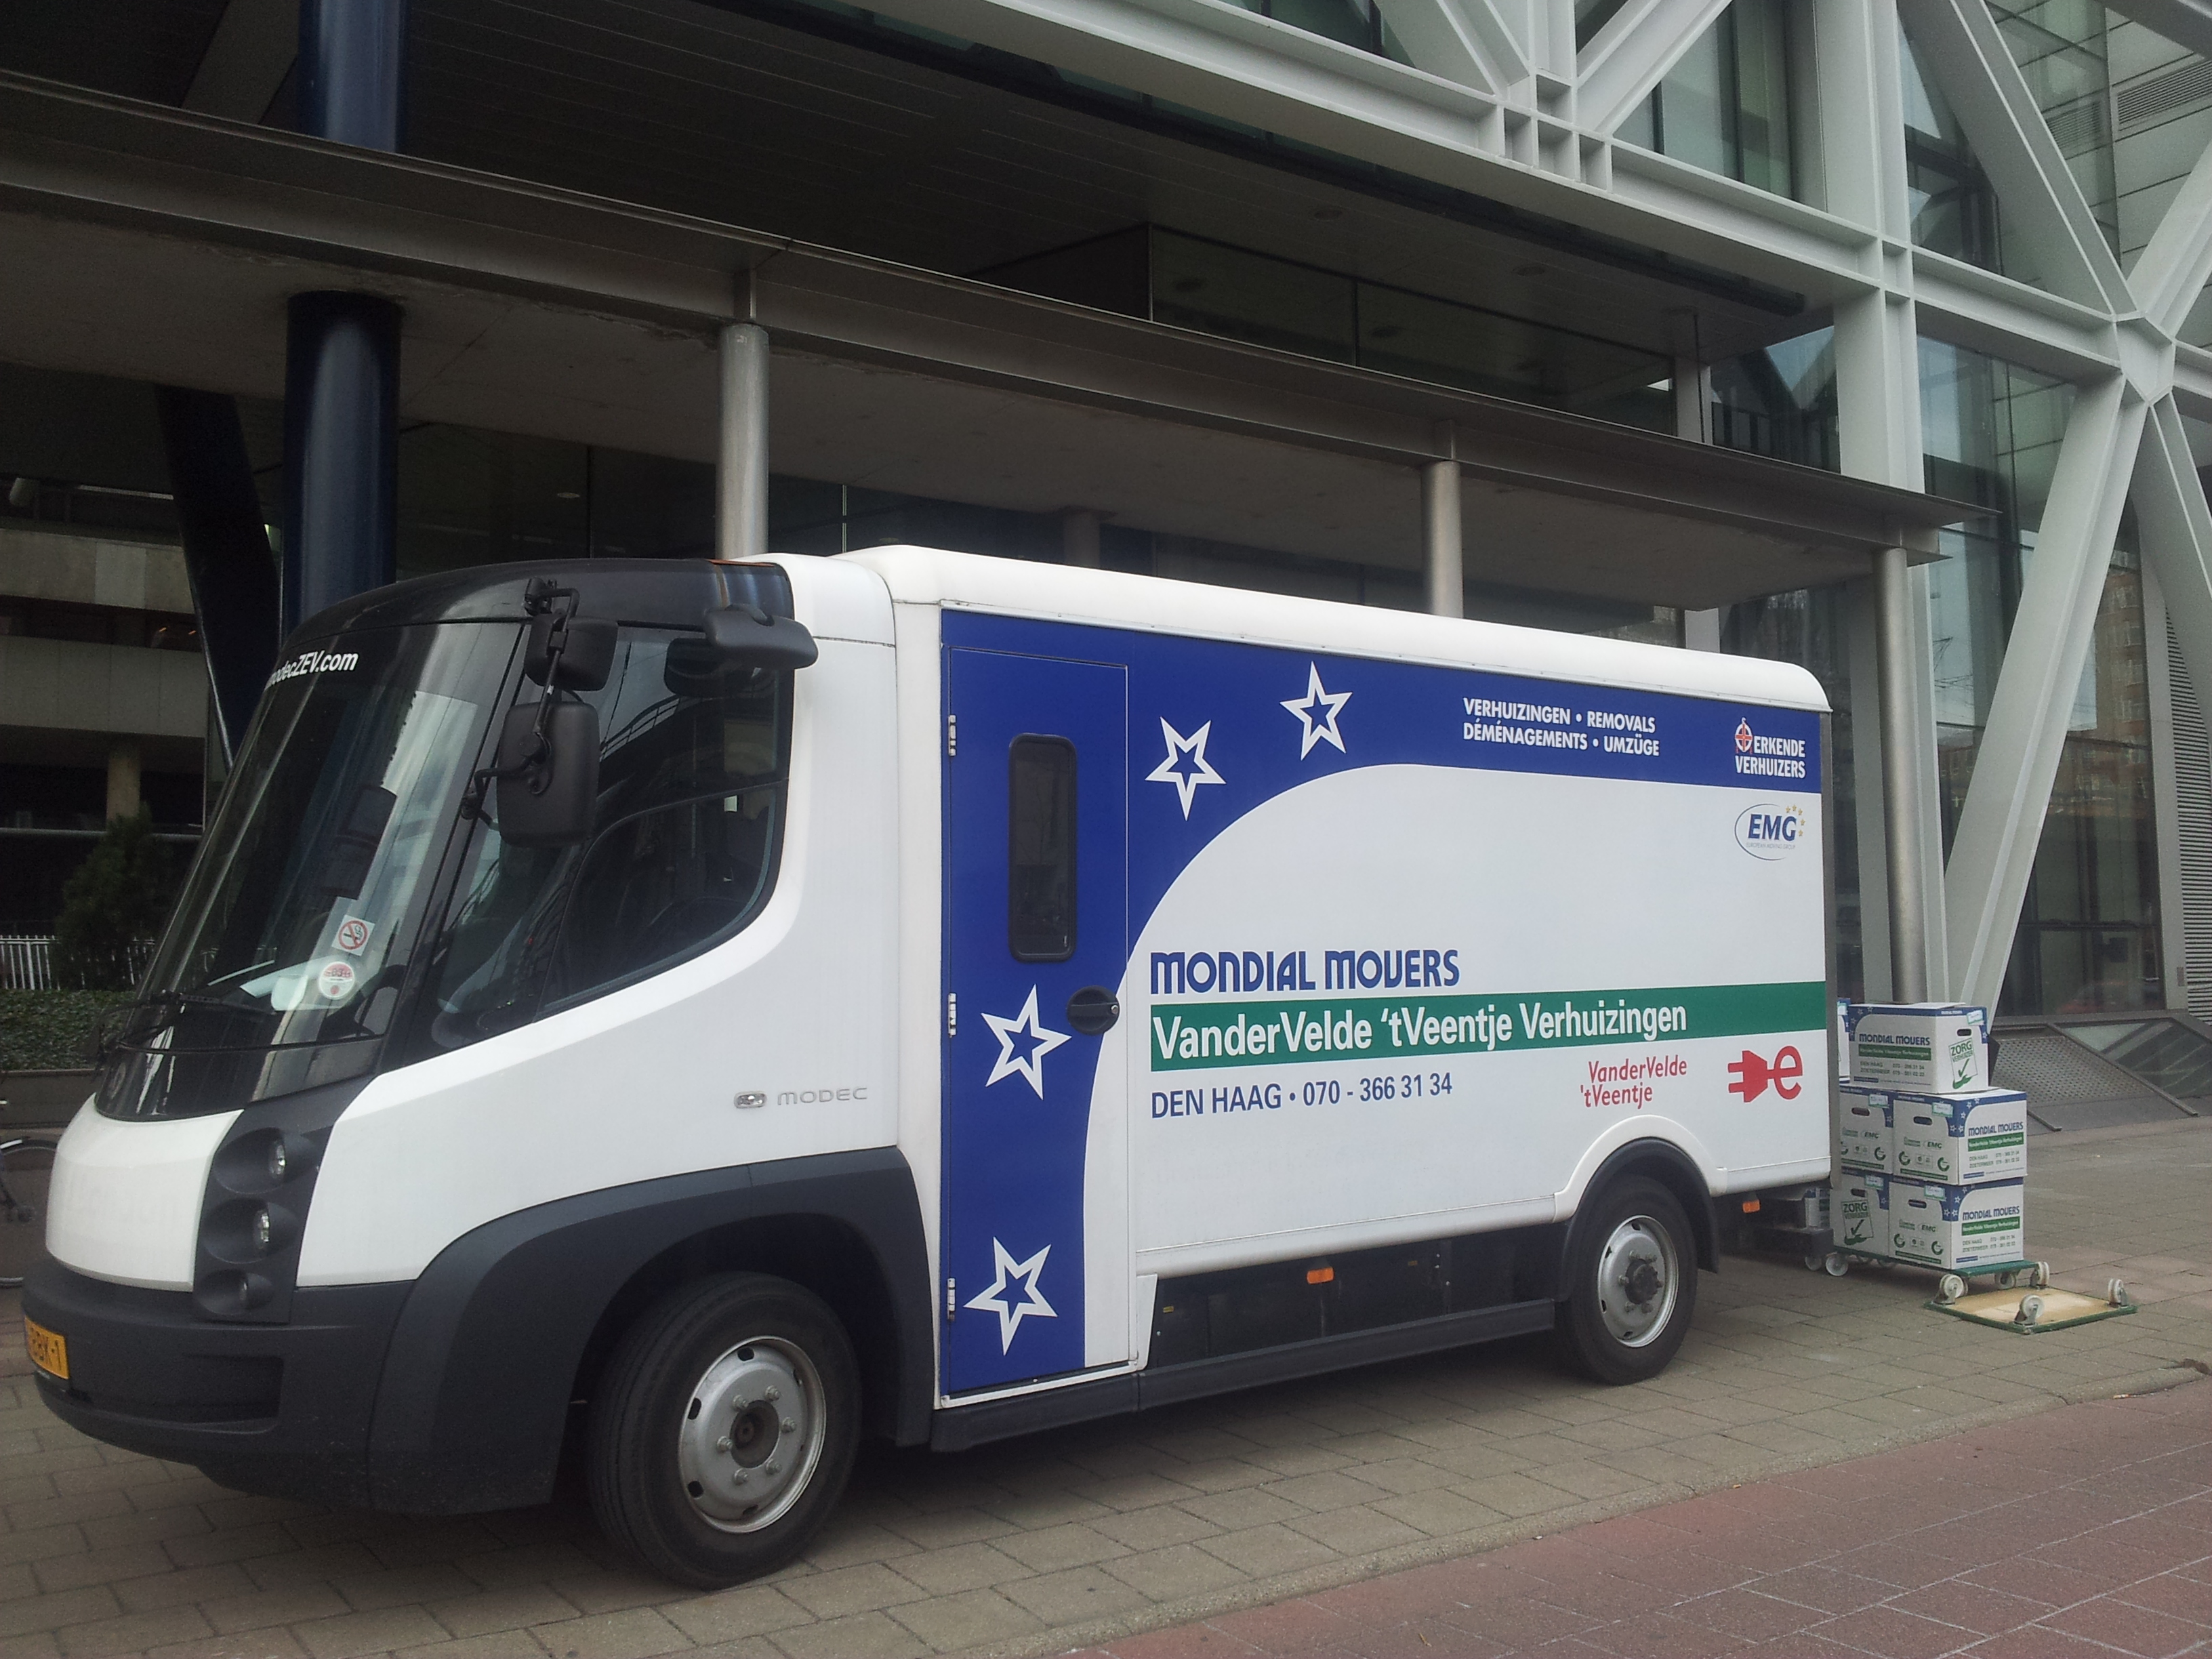 Mondial Van der Velde 't veentje verhuizingen elektrische verhuiswagen